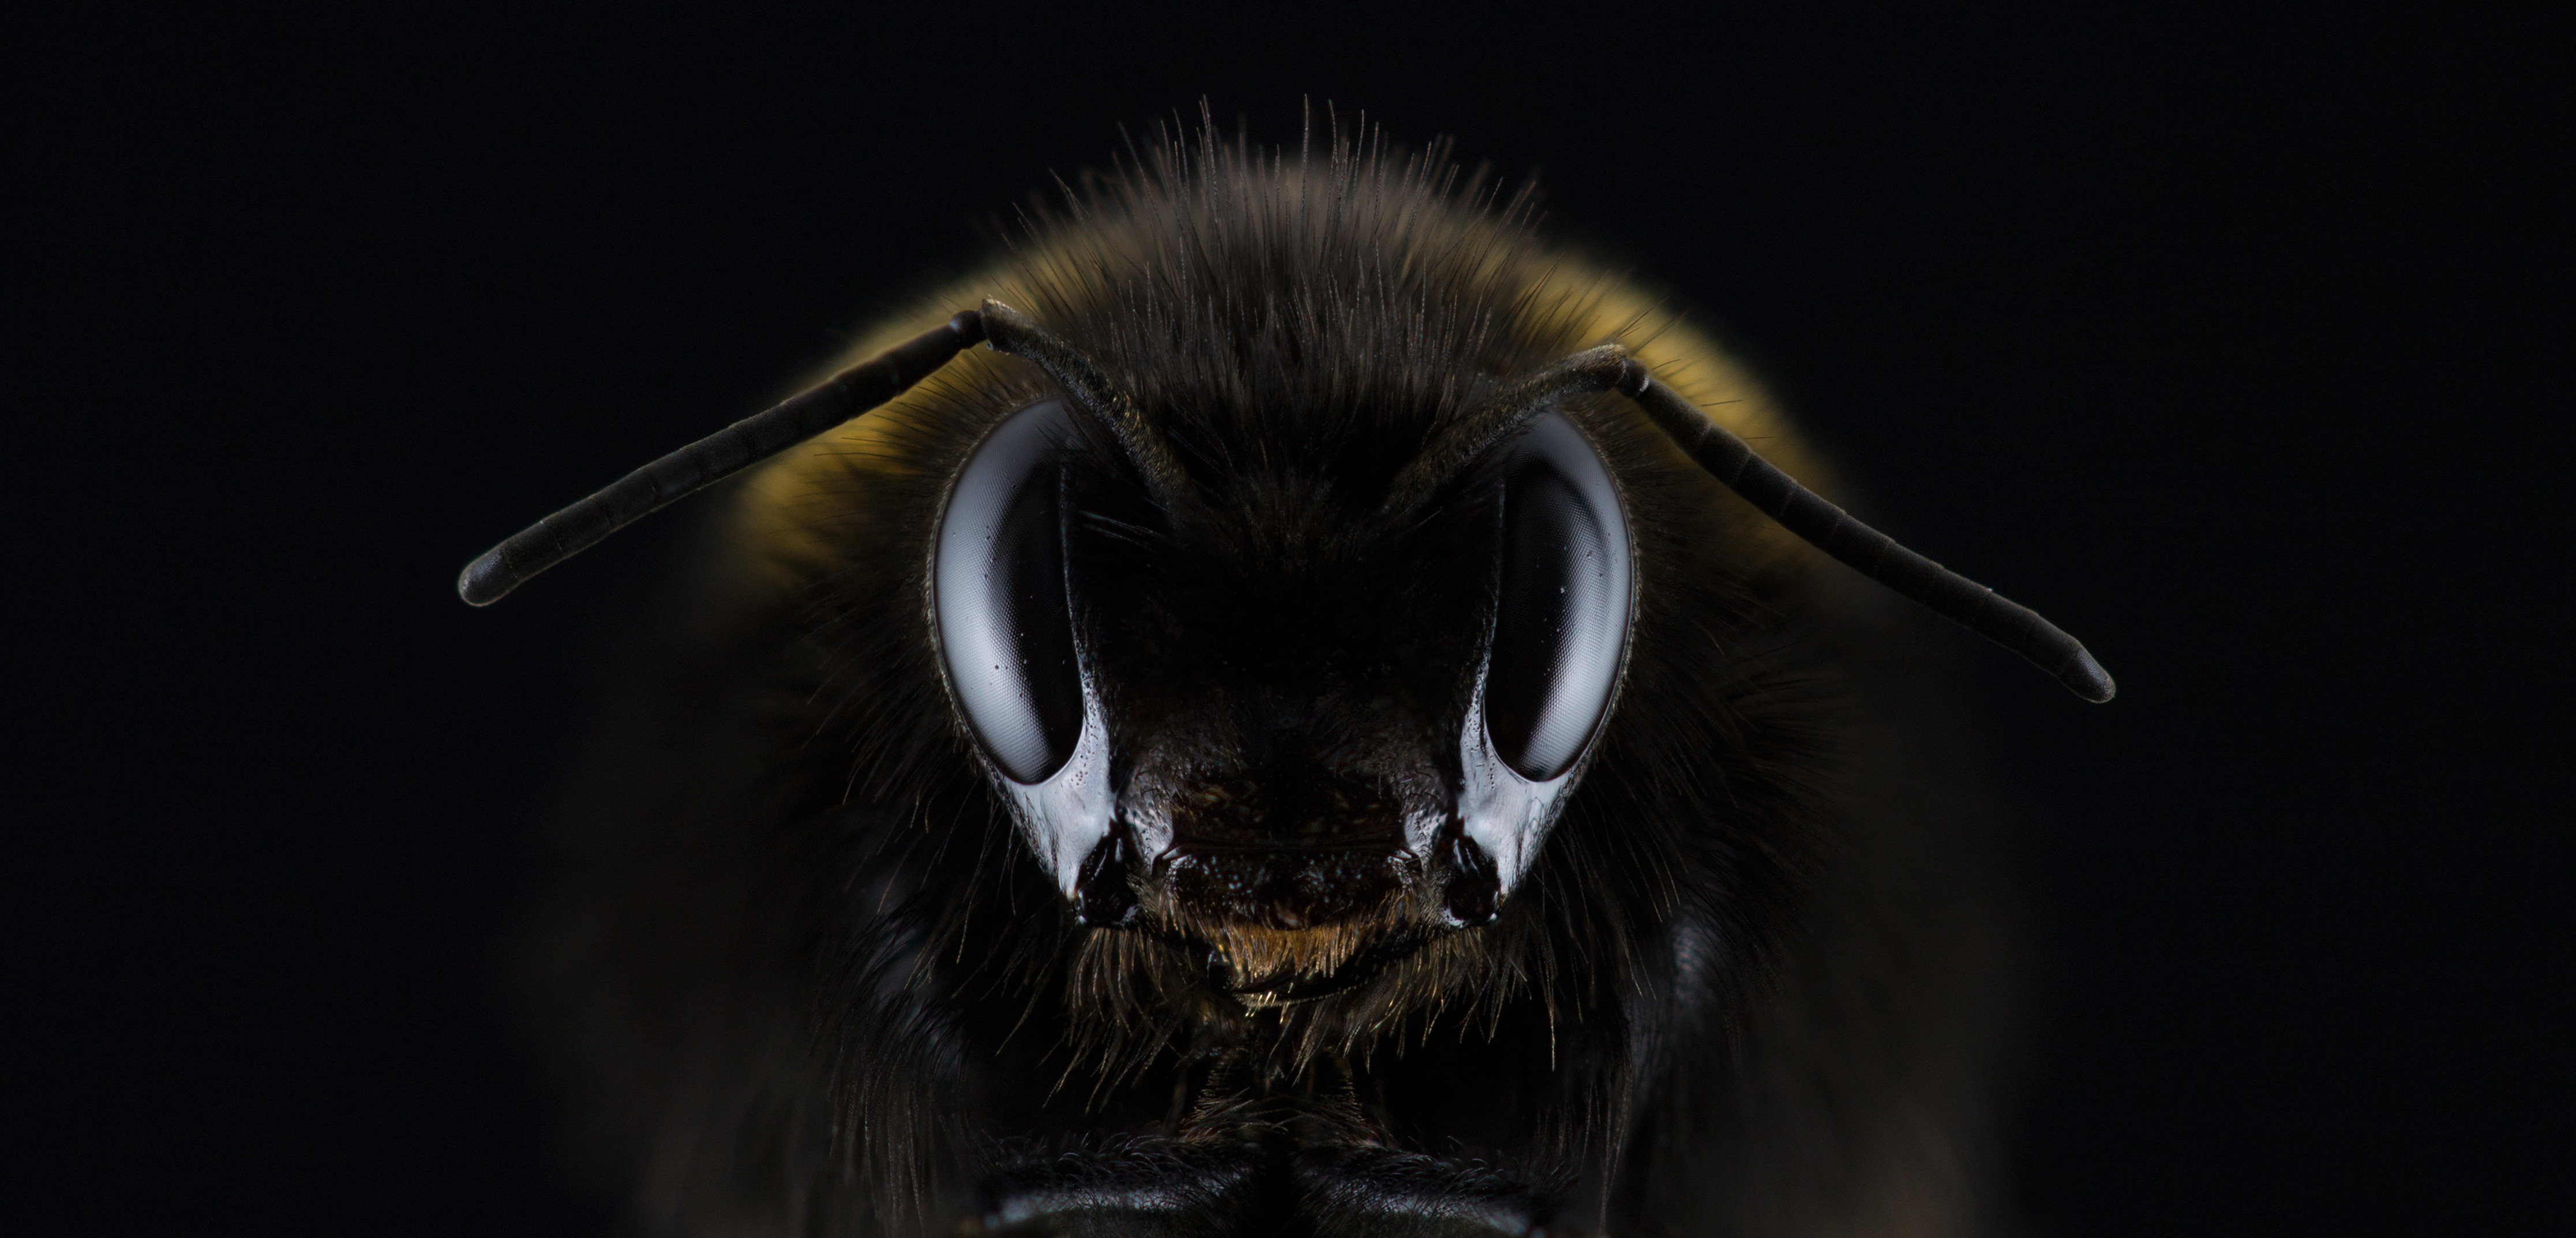 Бесплатное фото Голова пчелы с большими глазами на черном фоне